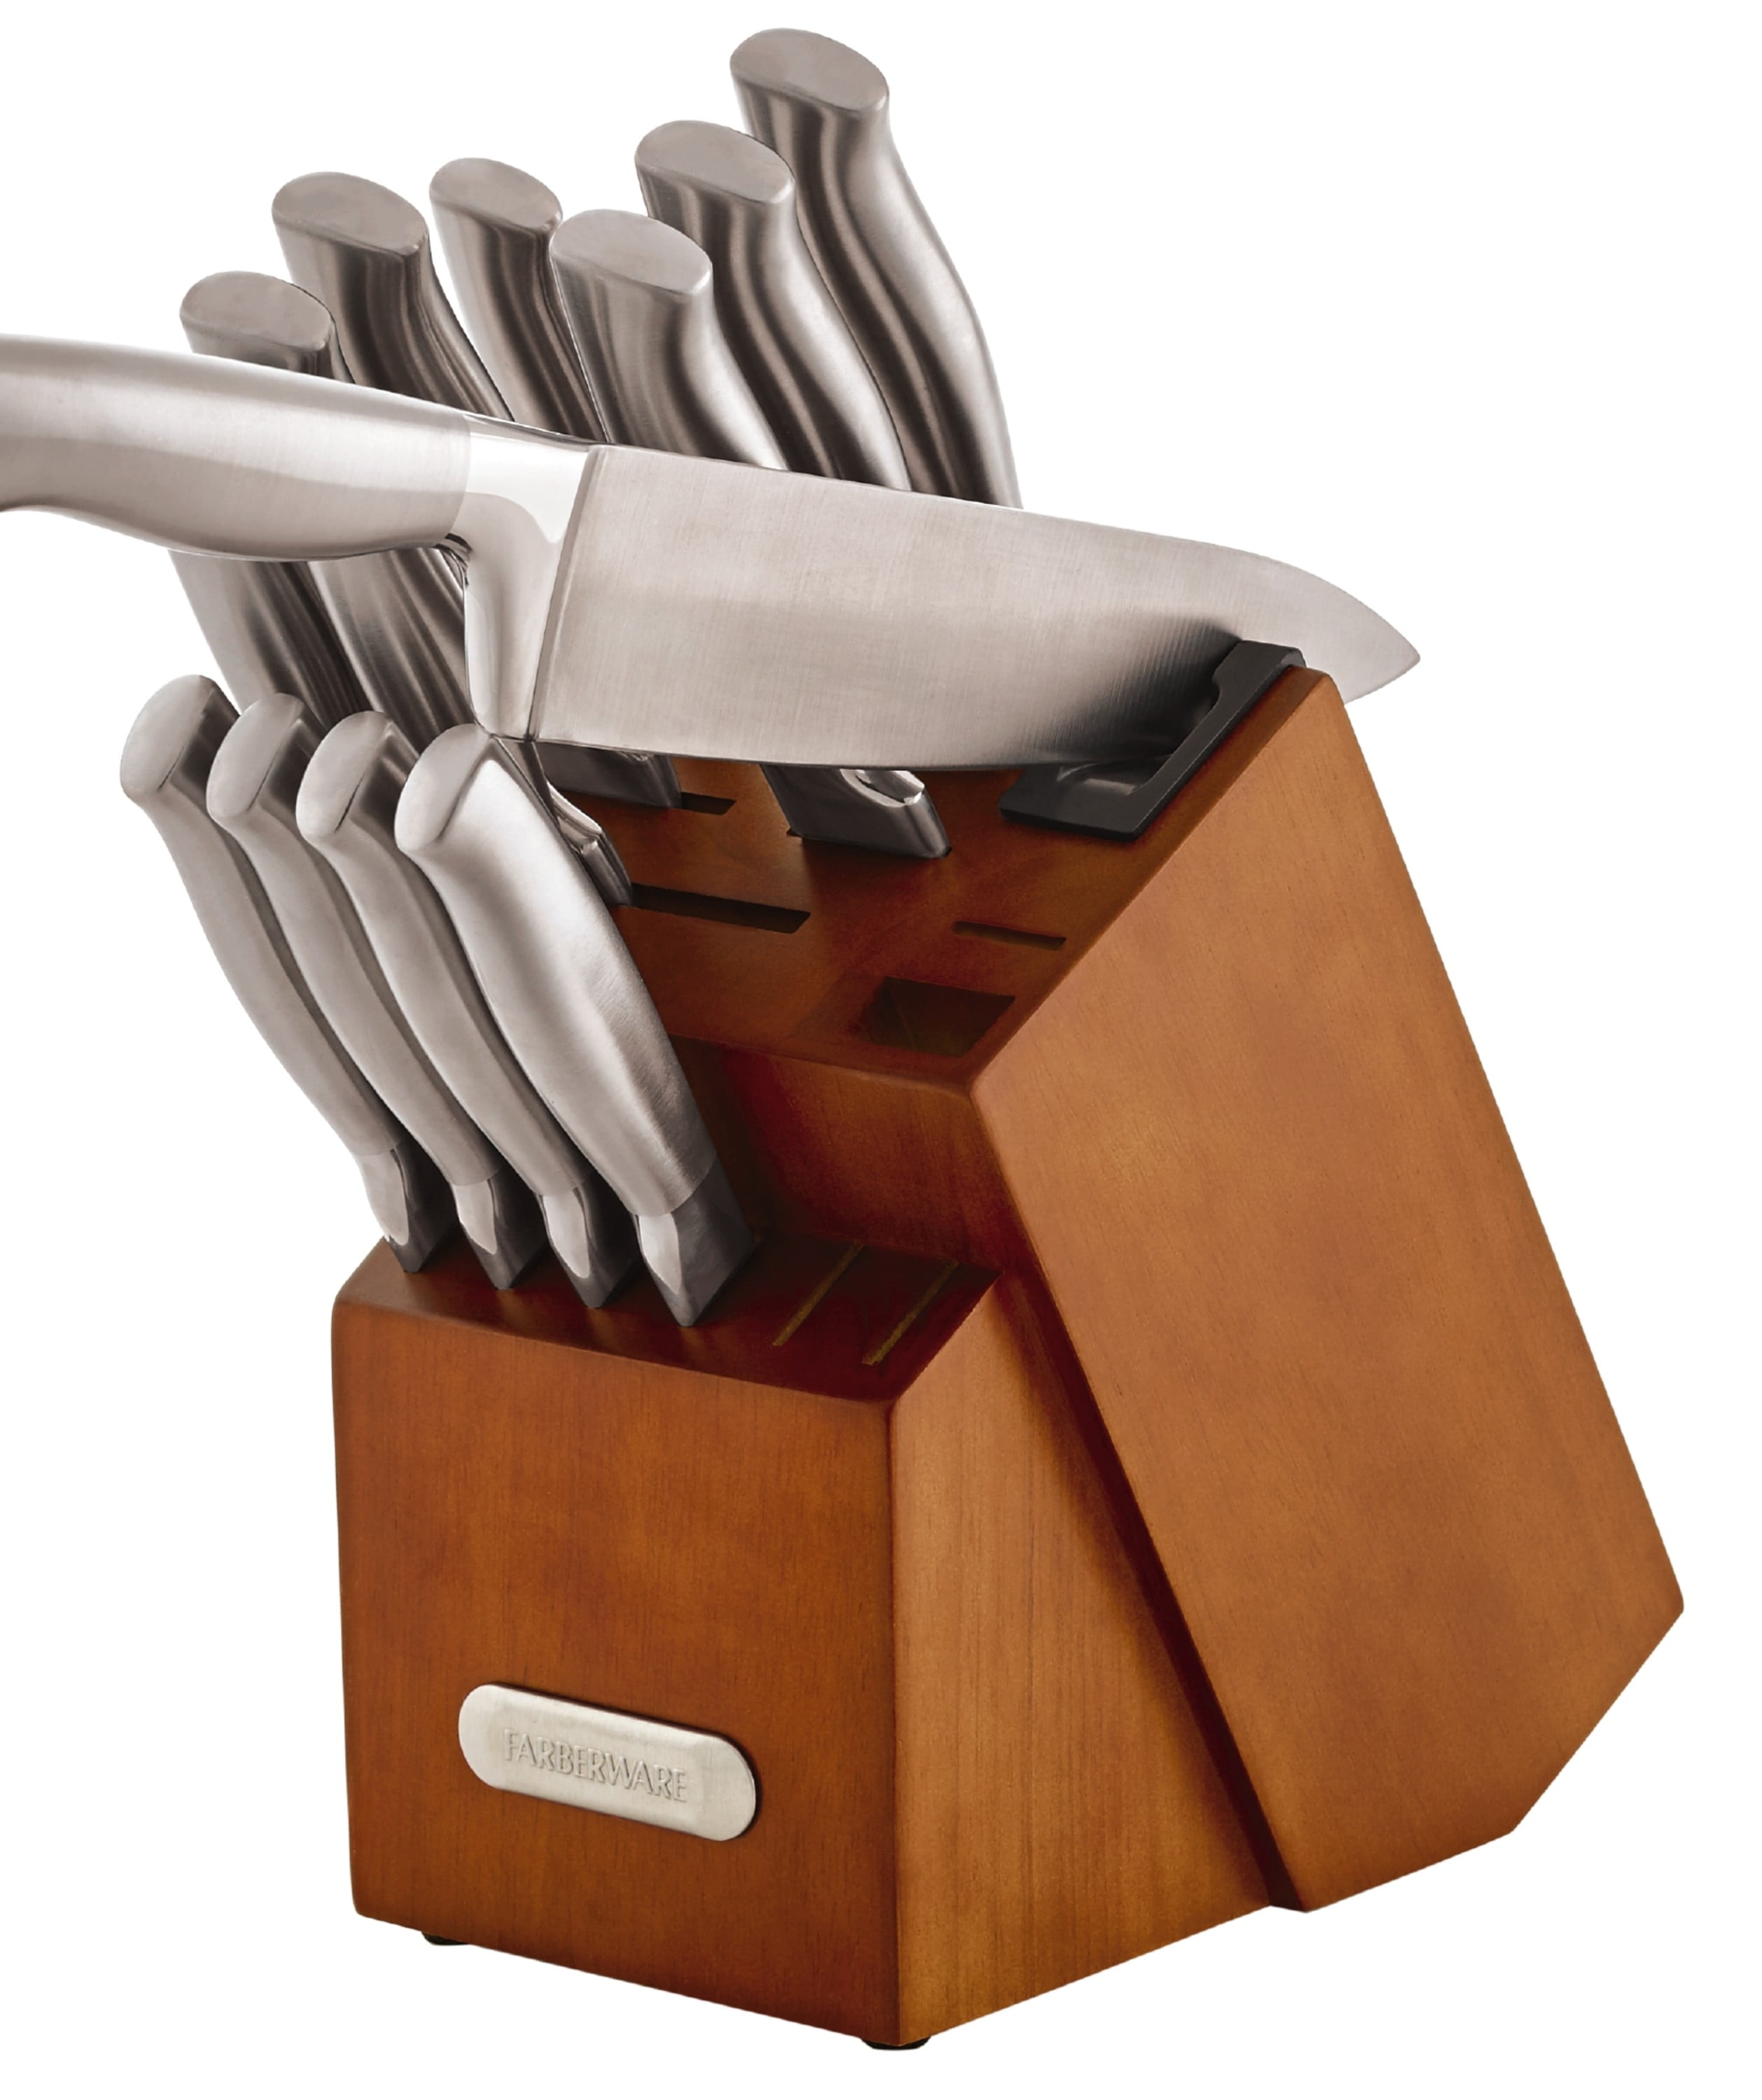 WELLSTAR 5 Piece Stainless Steel Assorted Knife Set & Reviews